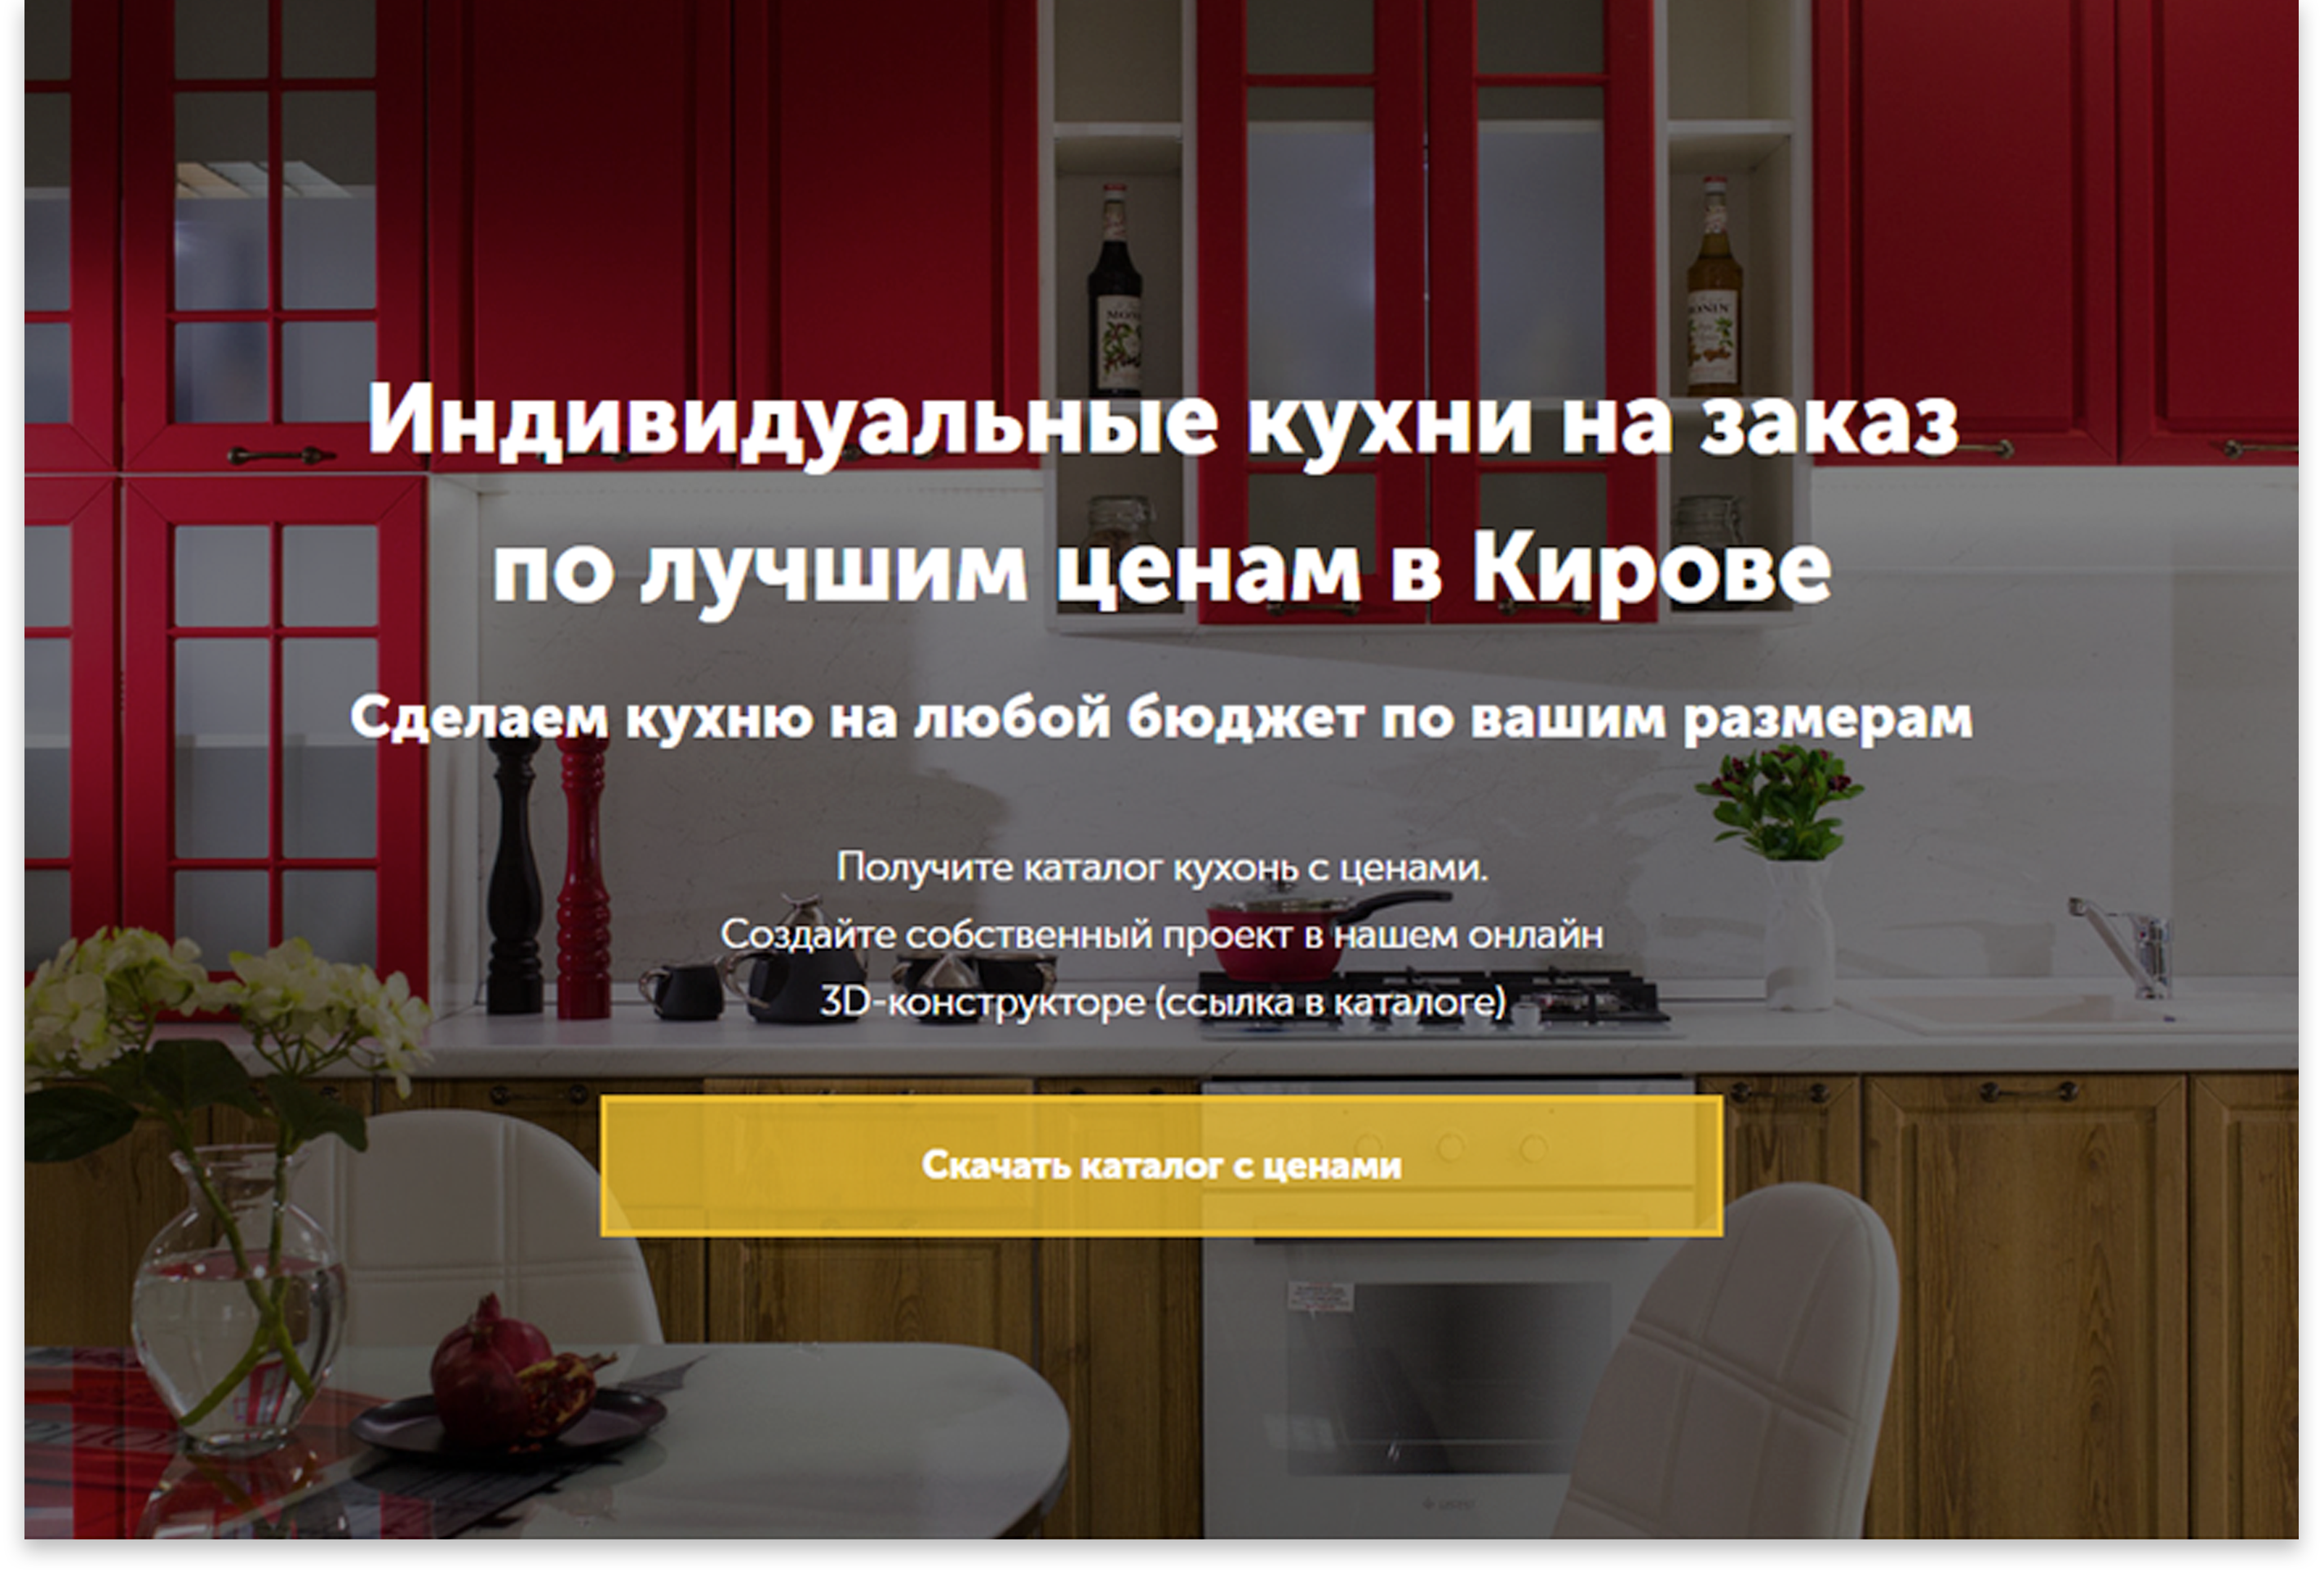 Кухни на заказ в КировеЛендинг для продажи индивидуальных кухонь на заказ в Кирове